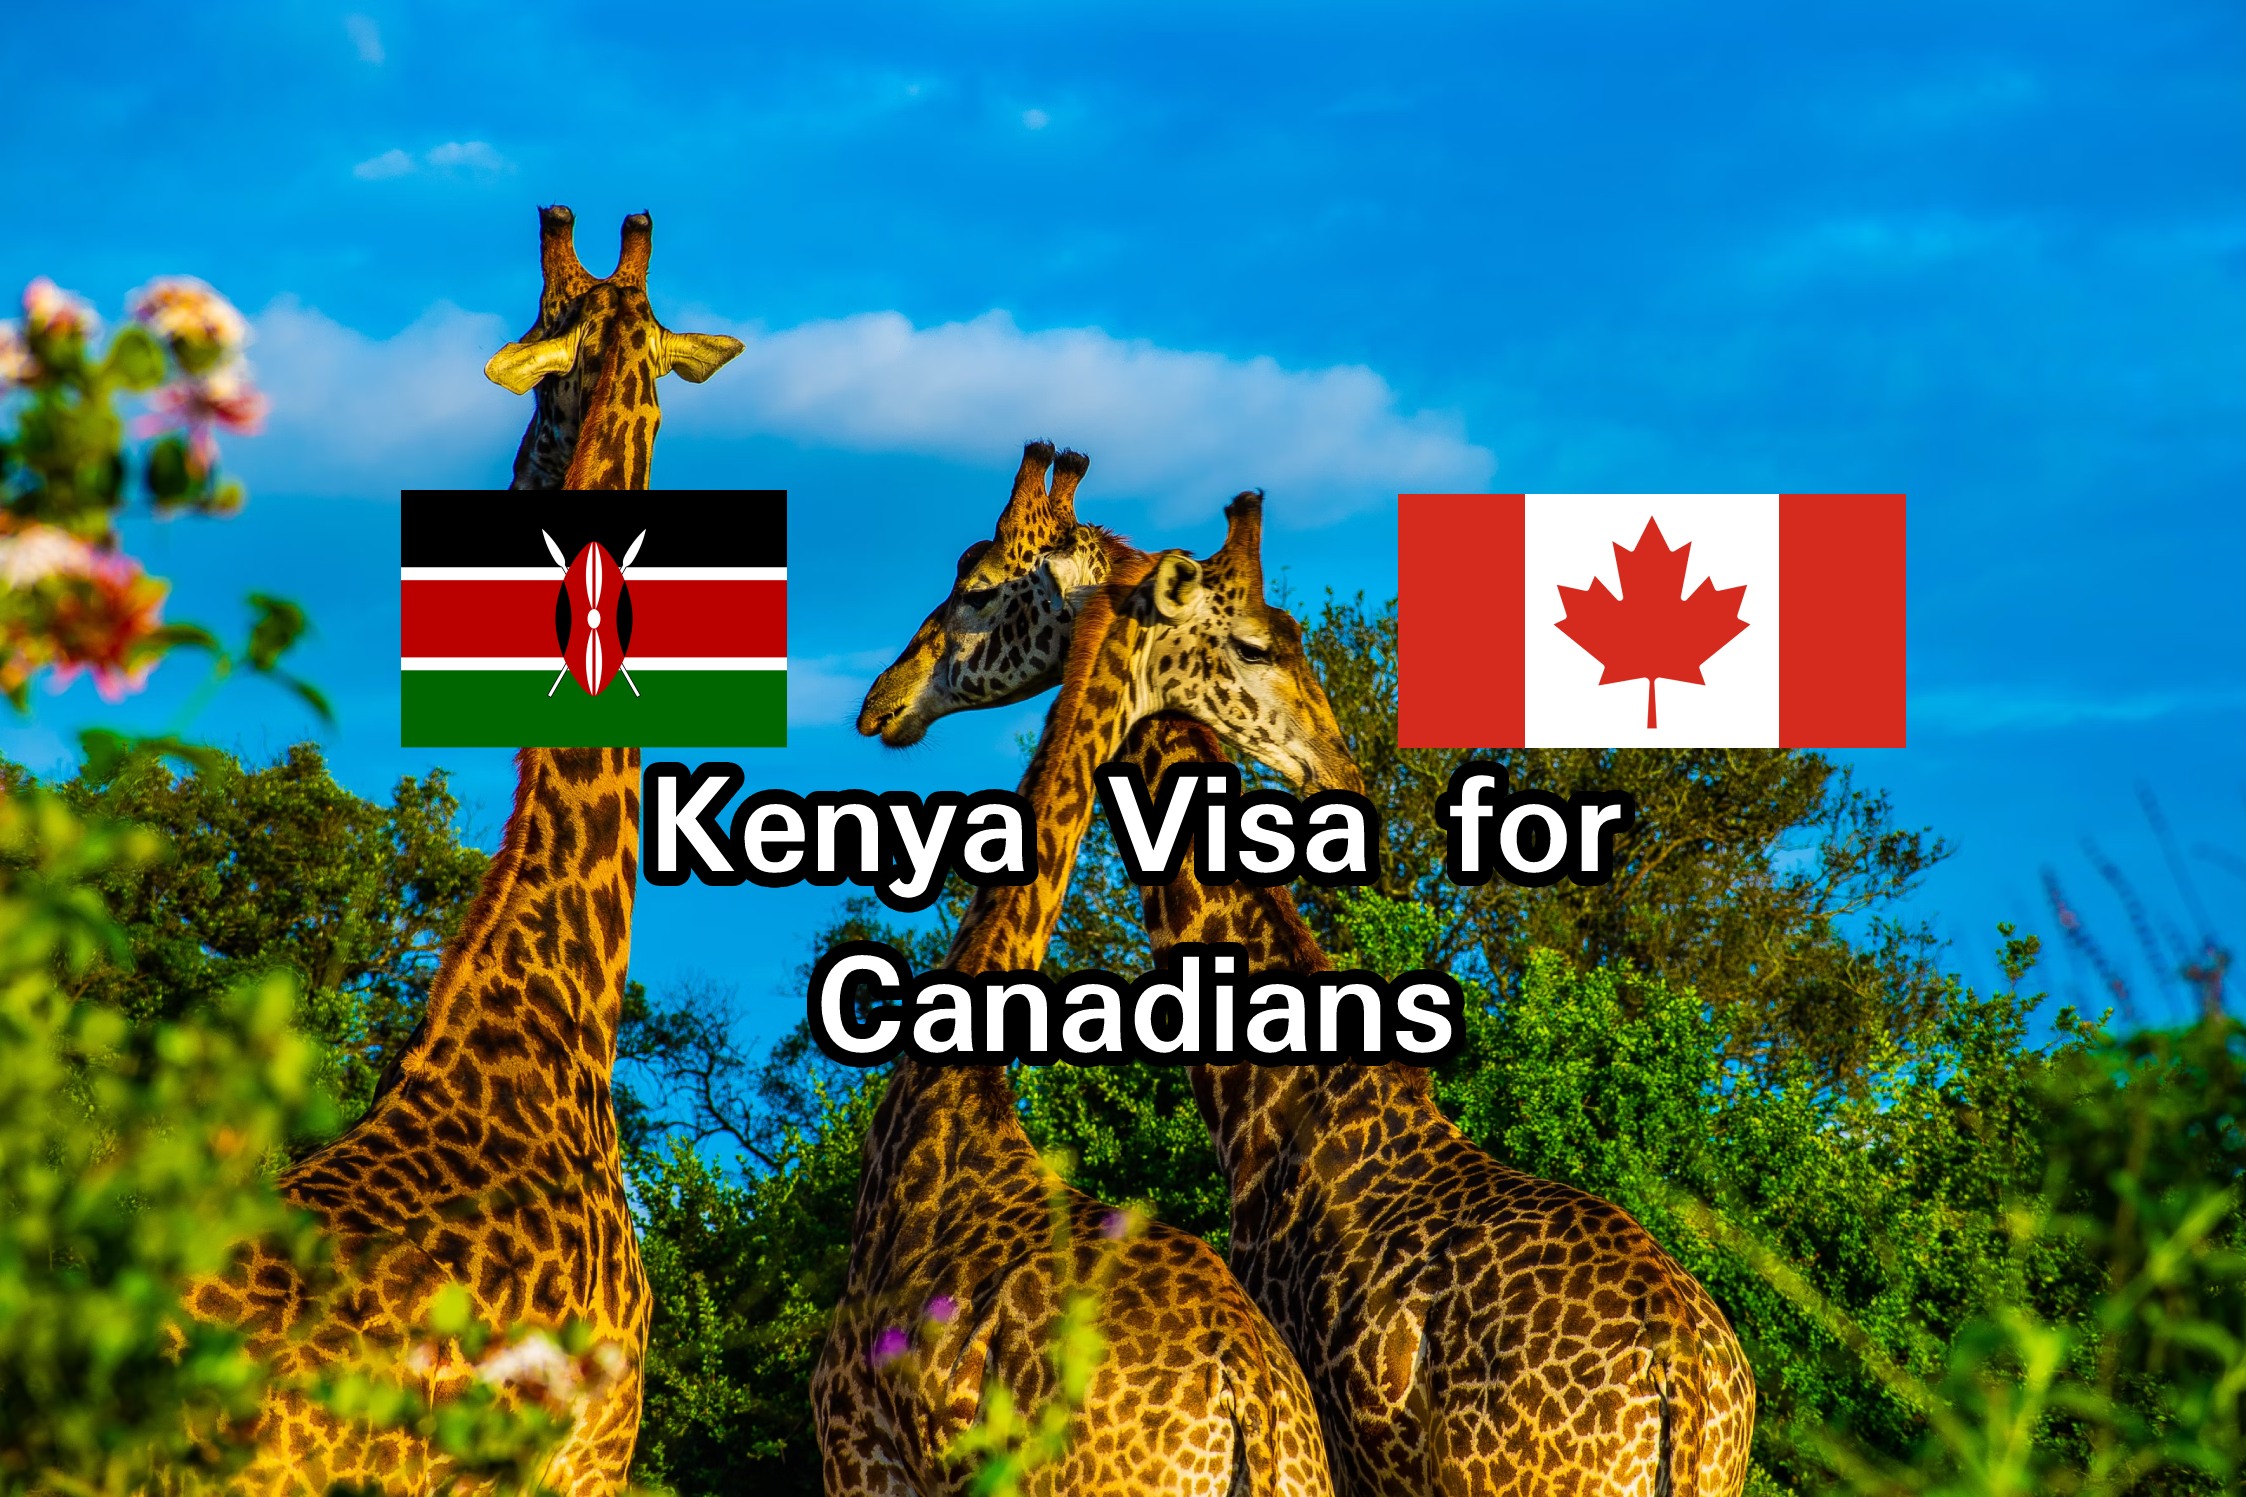 Kenya Visa for Canadians